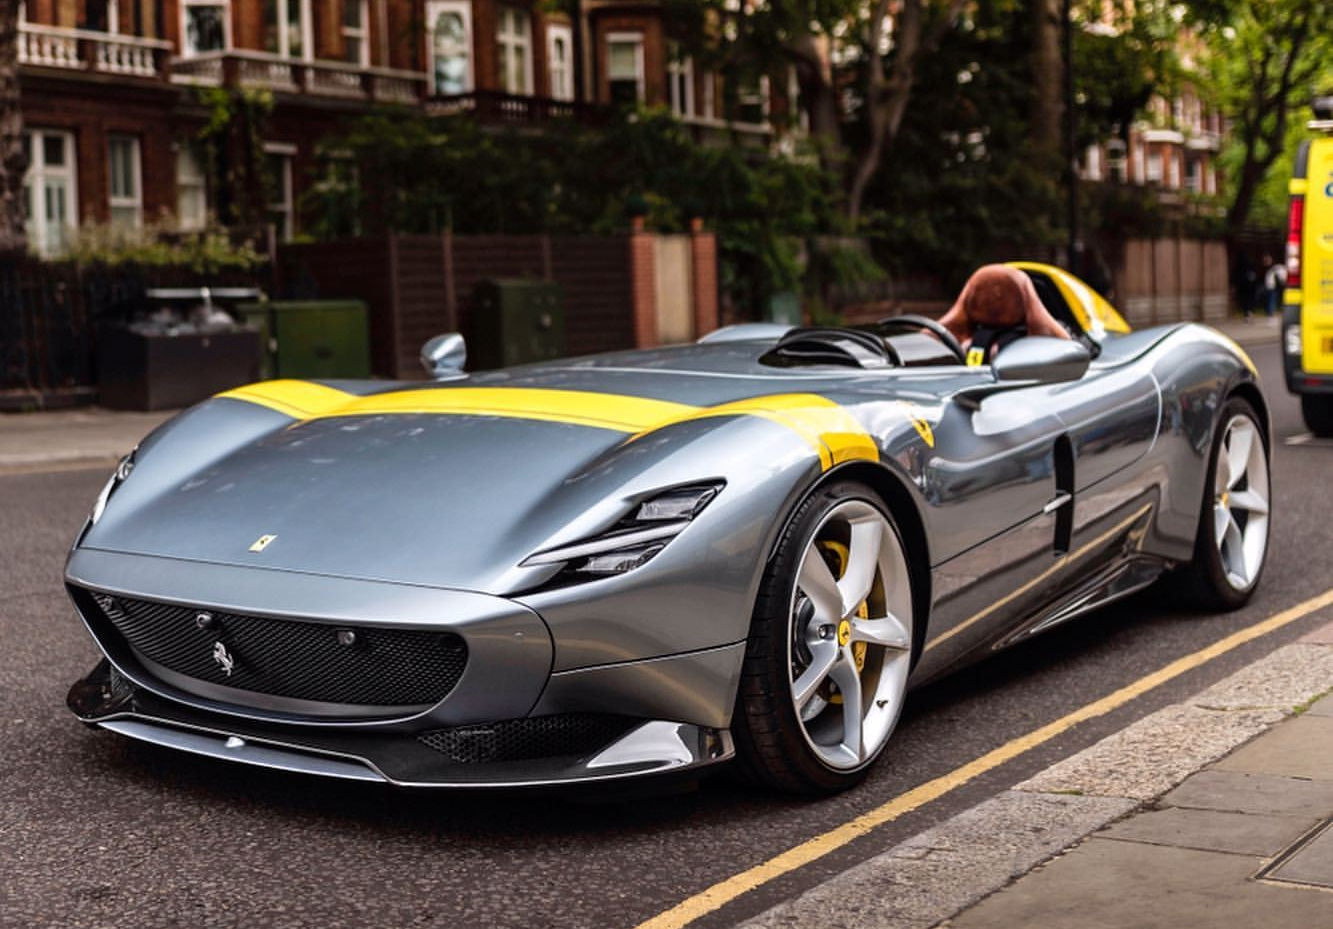 Ferrari Monza SP1 trên đường phố London.